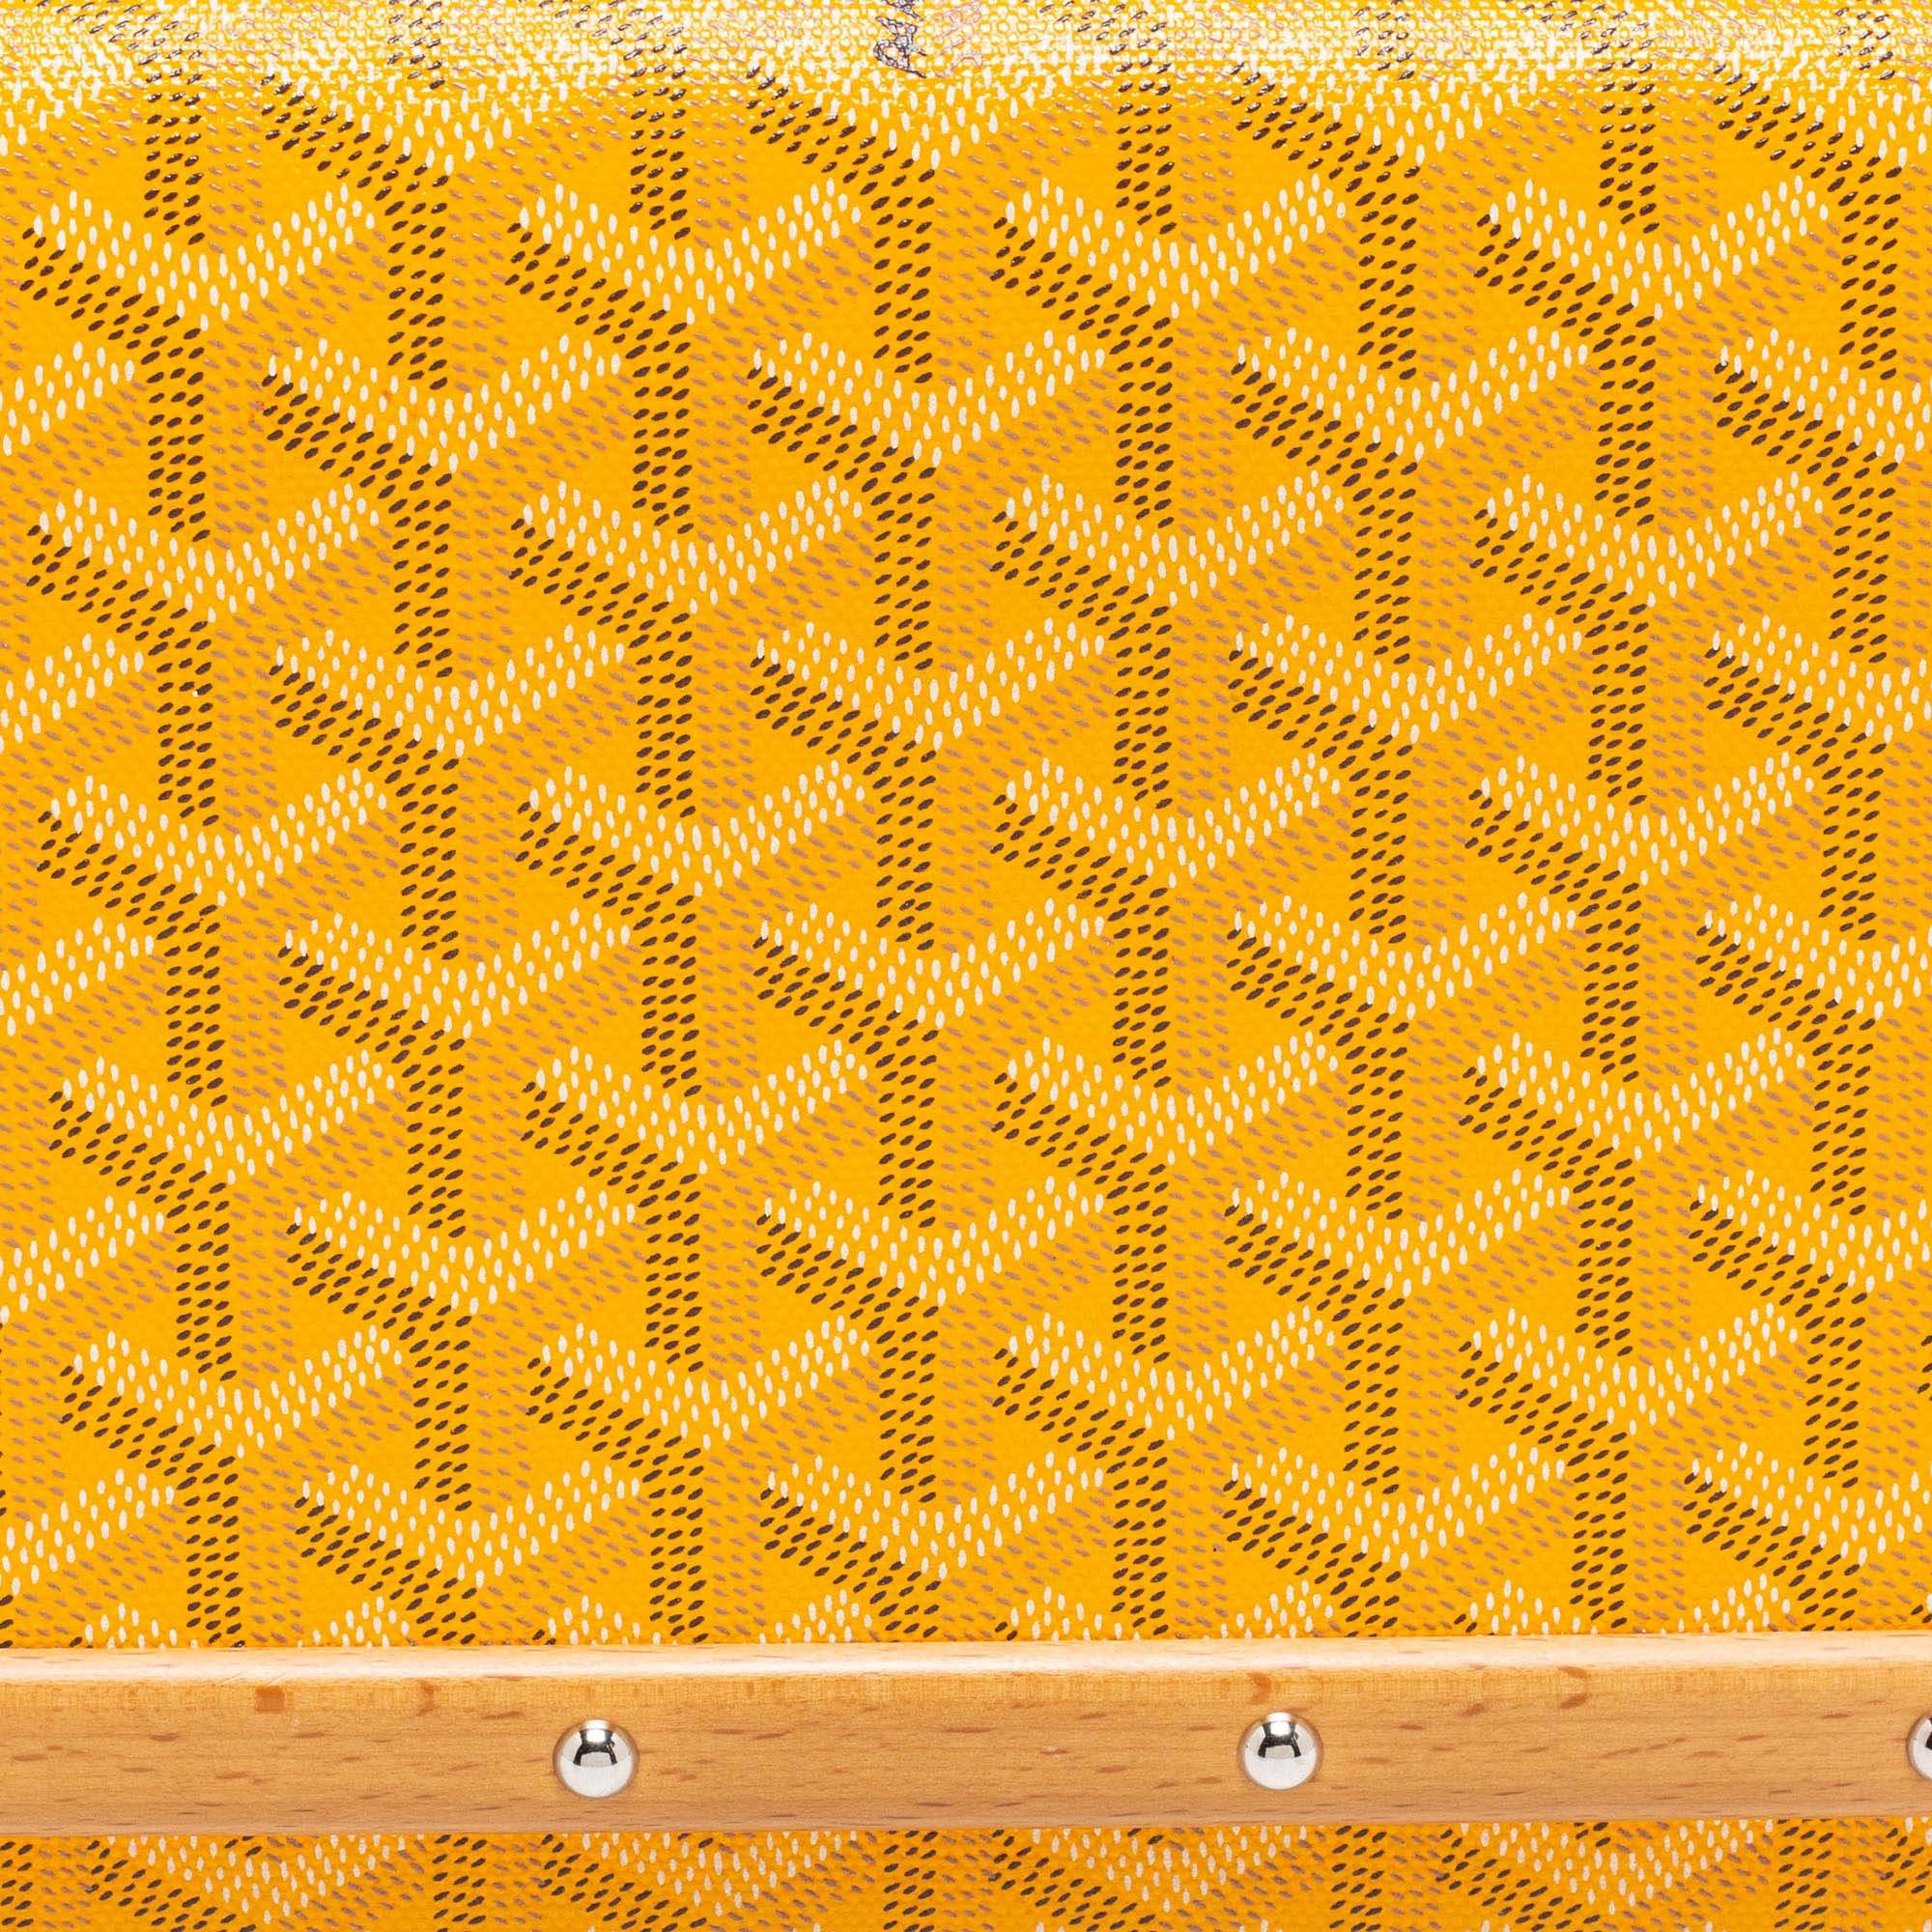 Goyard Yellow Goyardine Coated Canvas Monte Carlo Bois Clutch Goyard